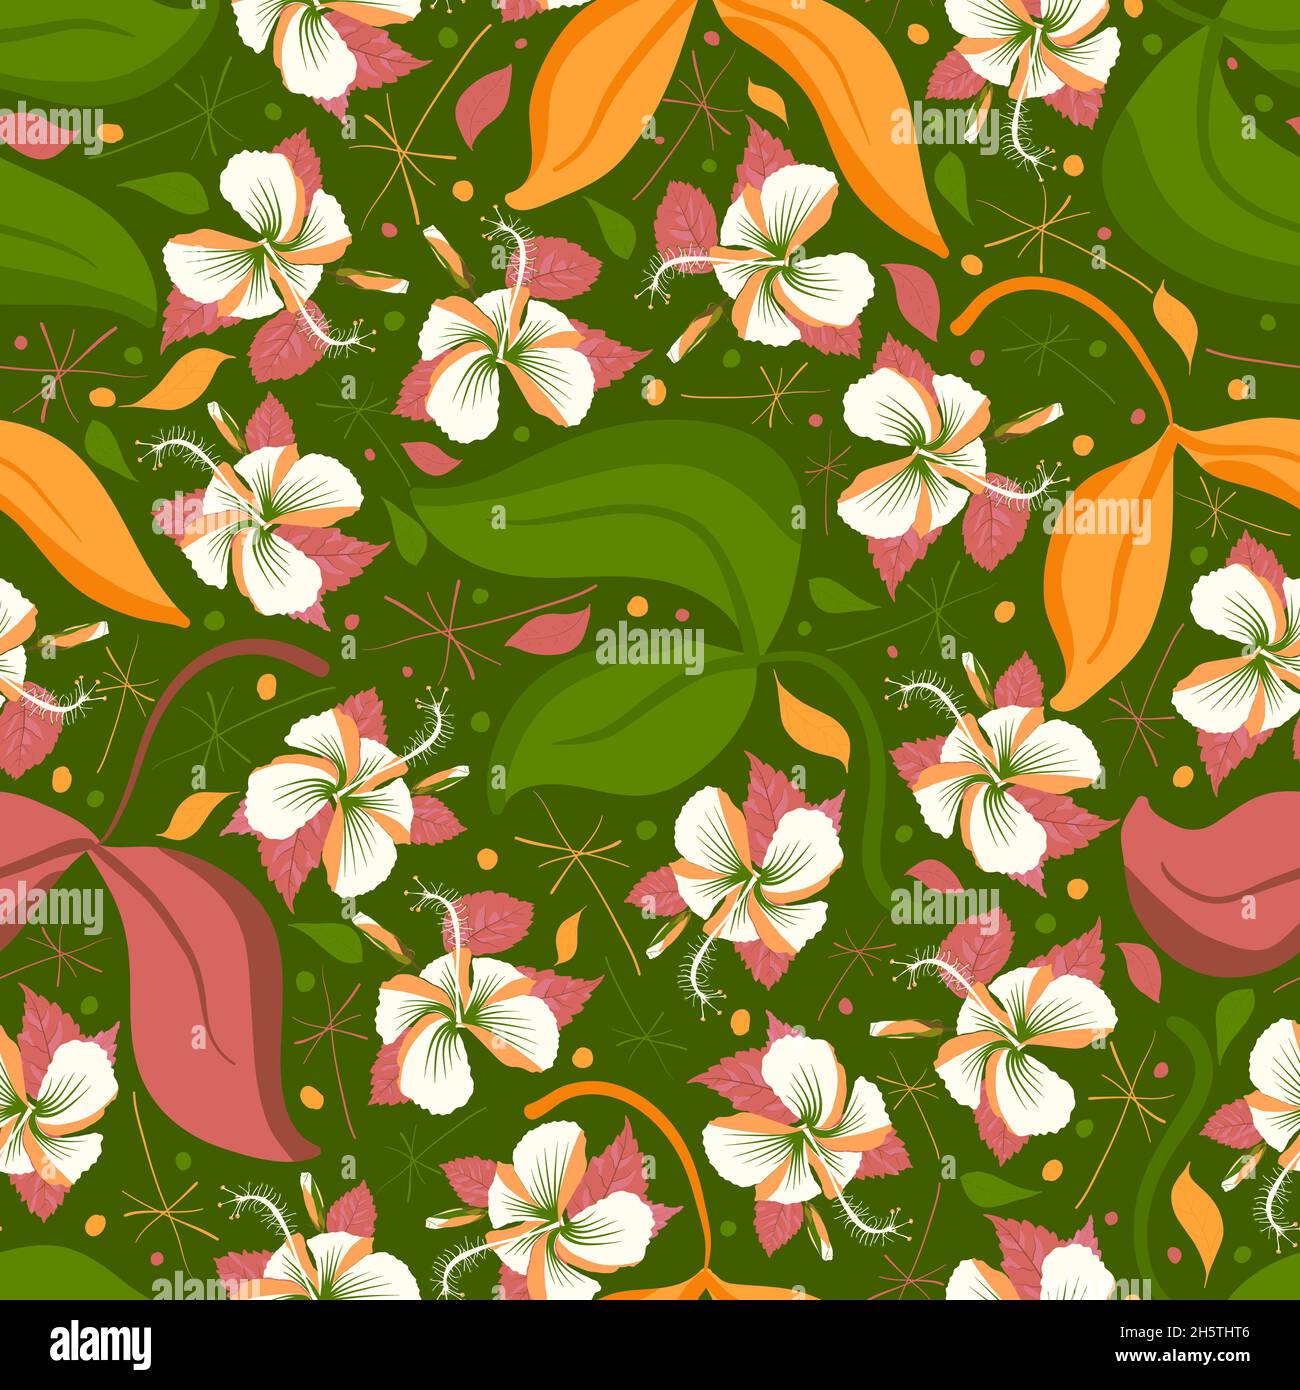 Wiederholtes grafisches Mustermuster aus blumigen Designelementen. Polynesische Hibiskus-Schwarzpflanze blüht durchgehend. Erstellen und drucken Sie Dekorpolsterung, Hochzeitskarten, Verpackung, Wand. Stock Vektor